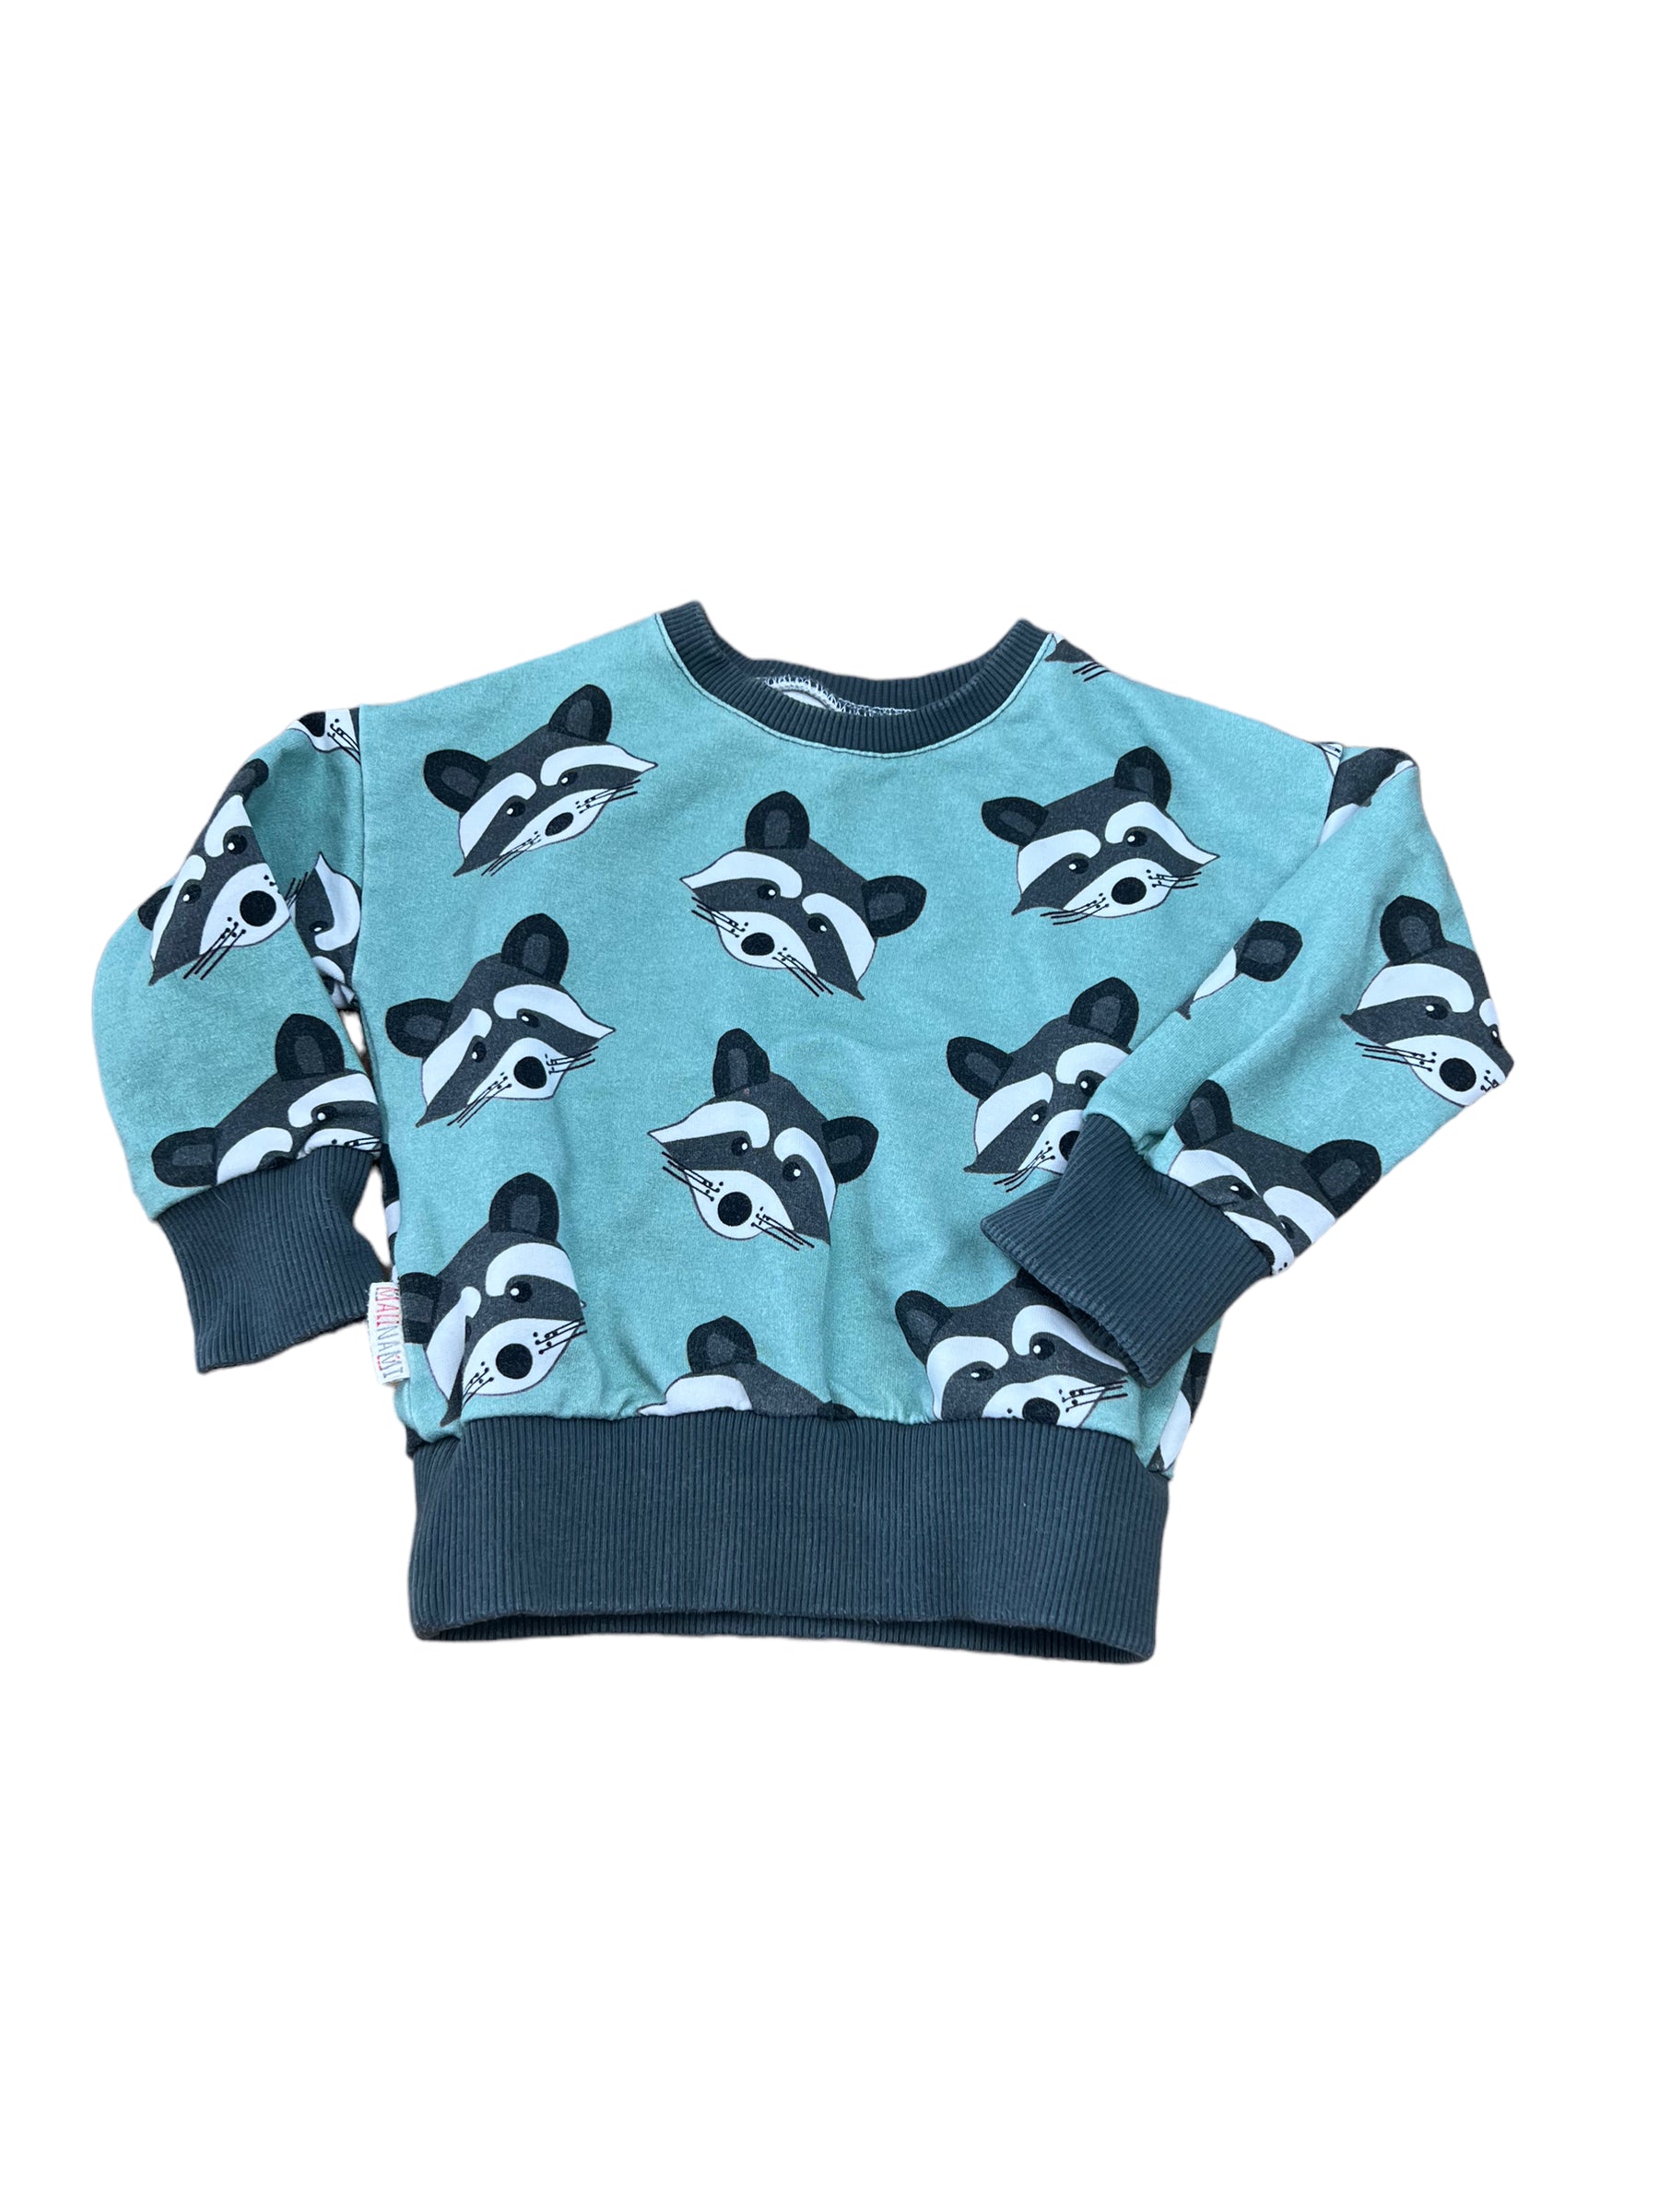 Malinami Raccoon Baby Sweatshirt